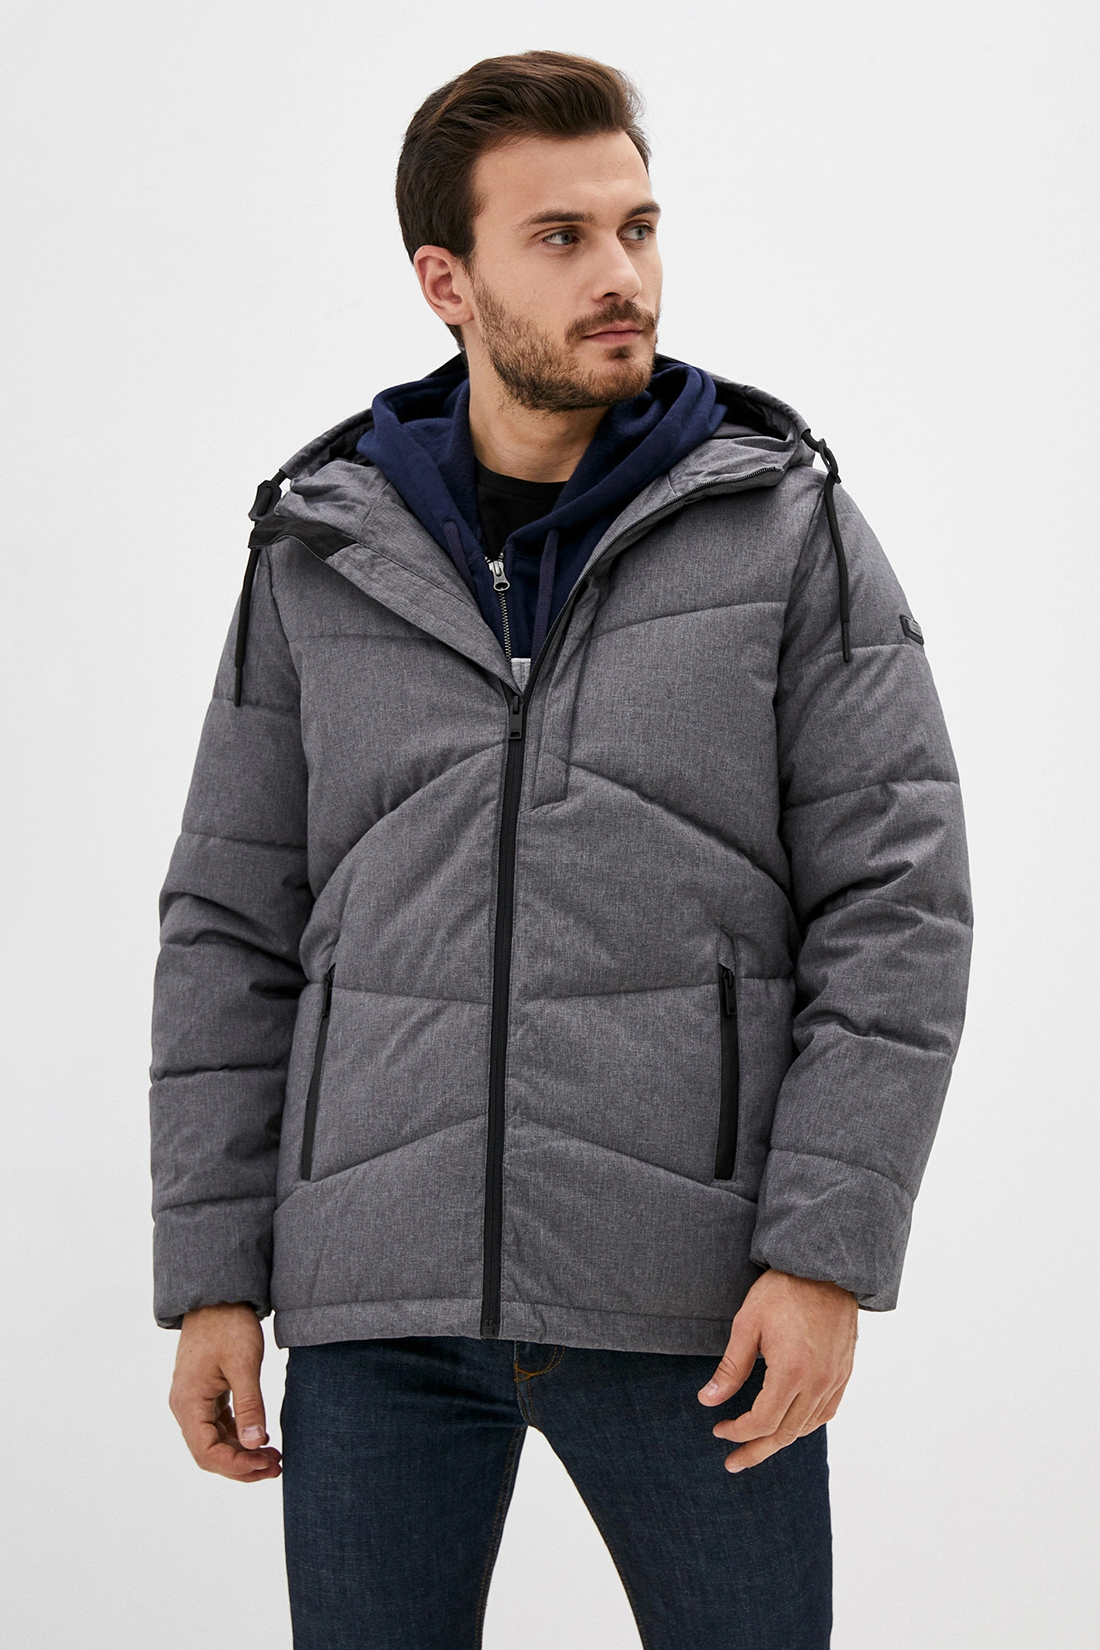 Куртка (Эко пух) (арт. baon B540508), размер XL, цвет deep grey melange#серый